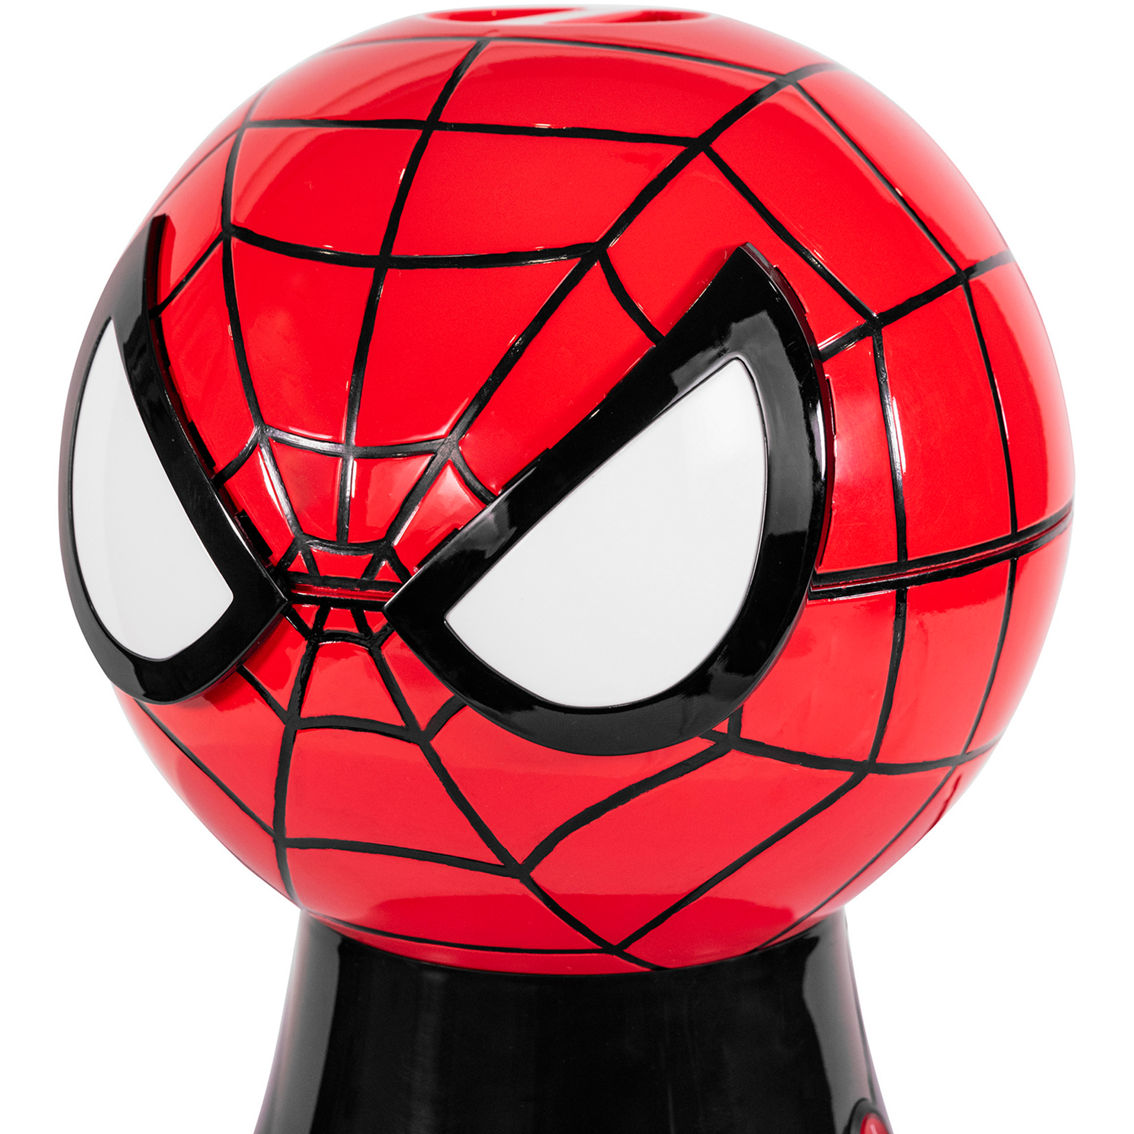 Uncanny Brands Marvel Spider-Man Popcorn Maker - Image 3 of 9